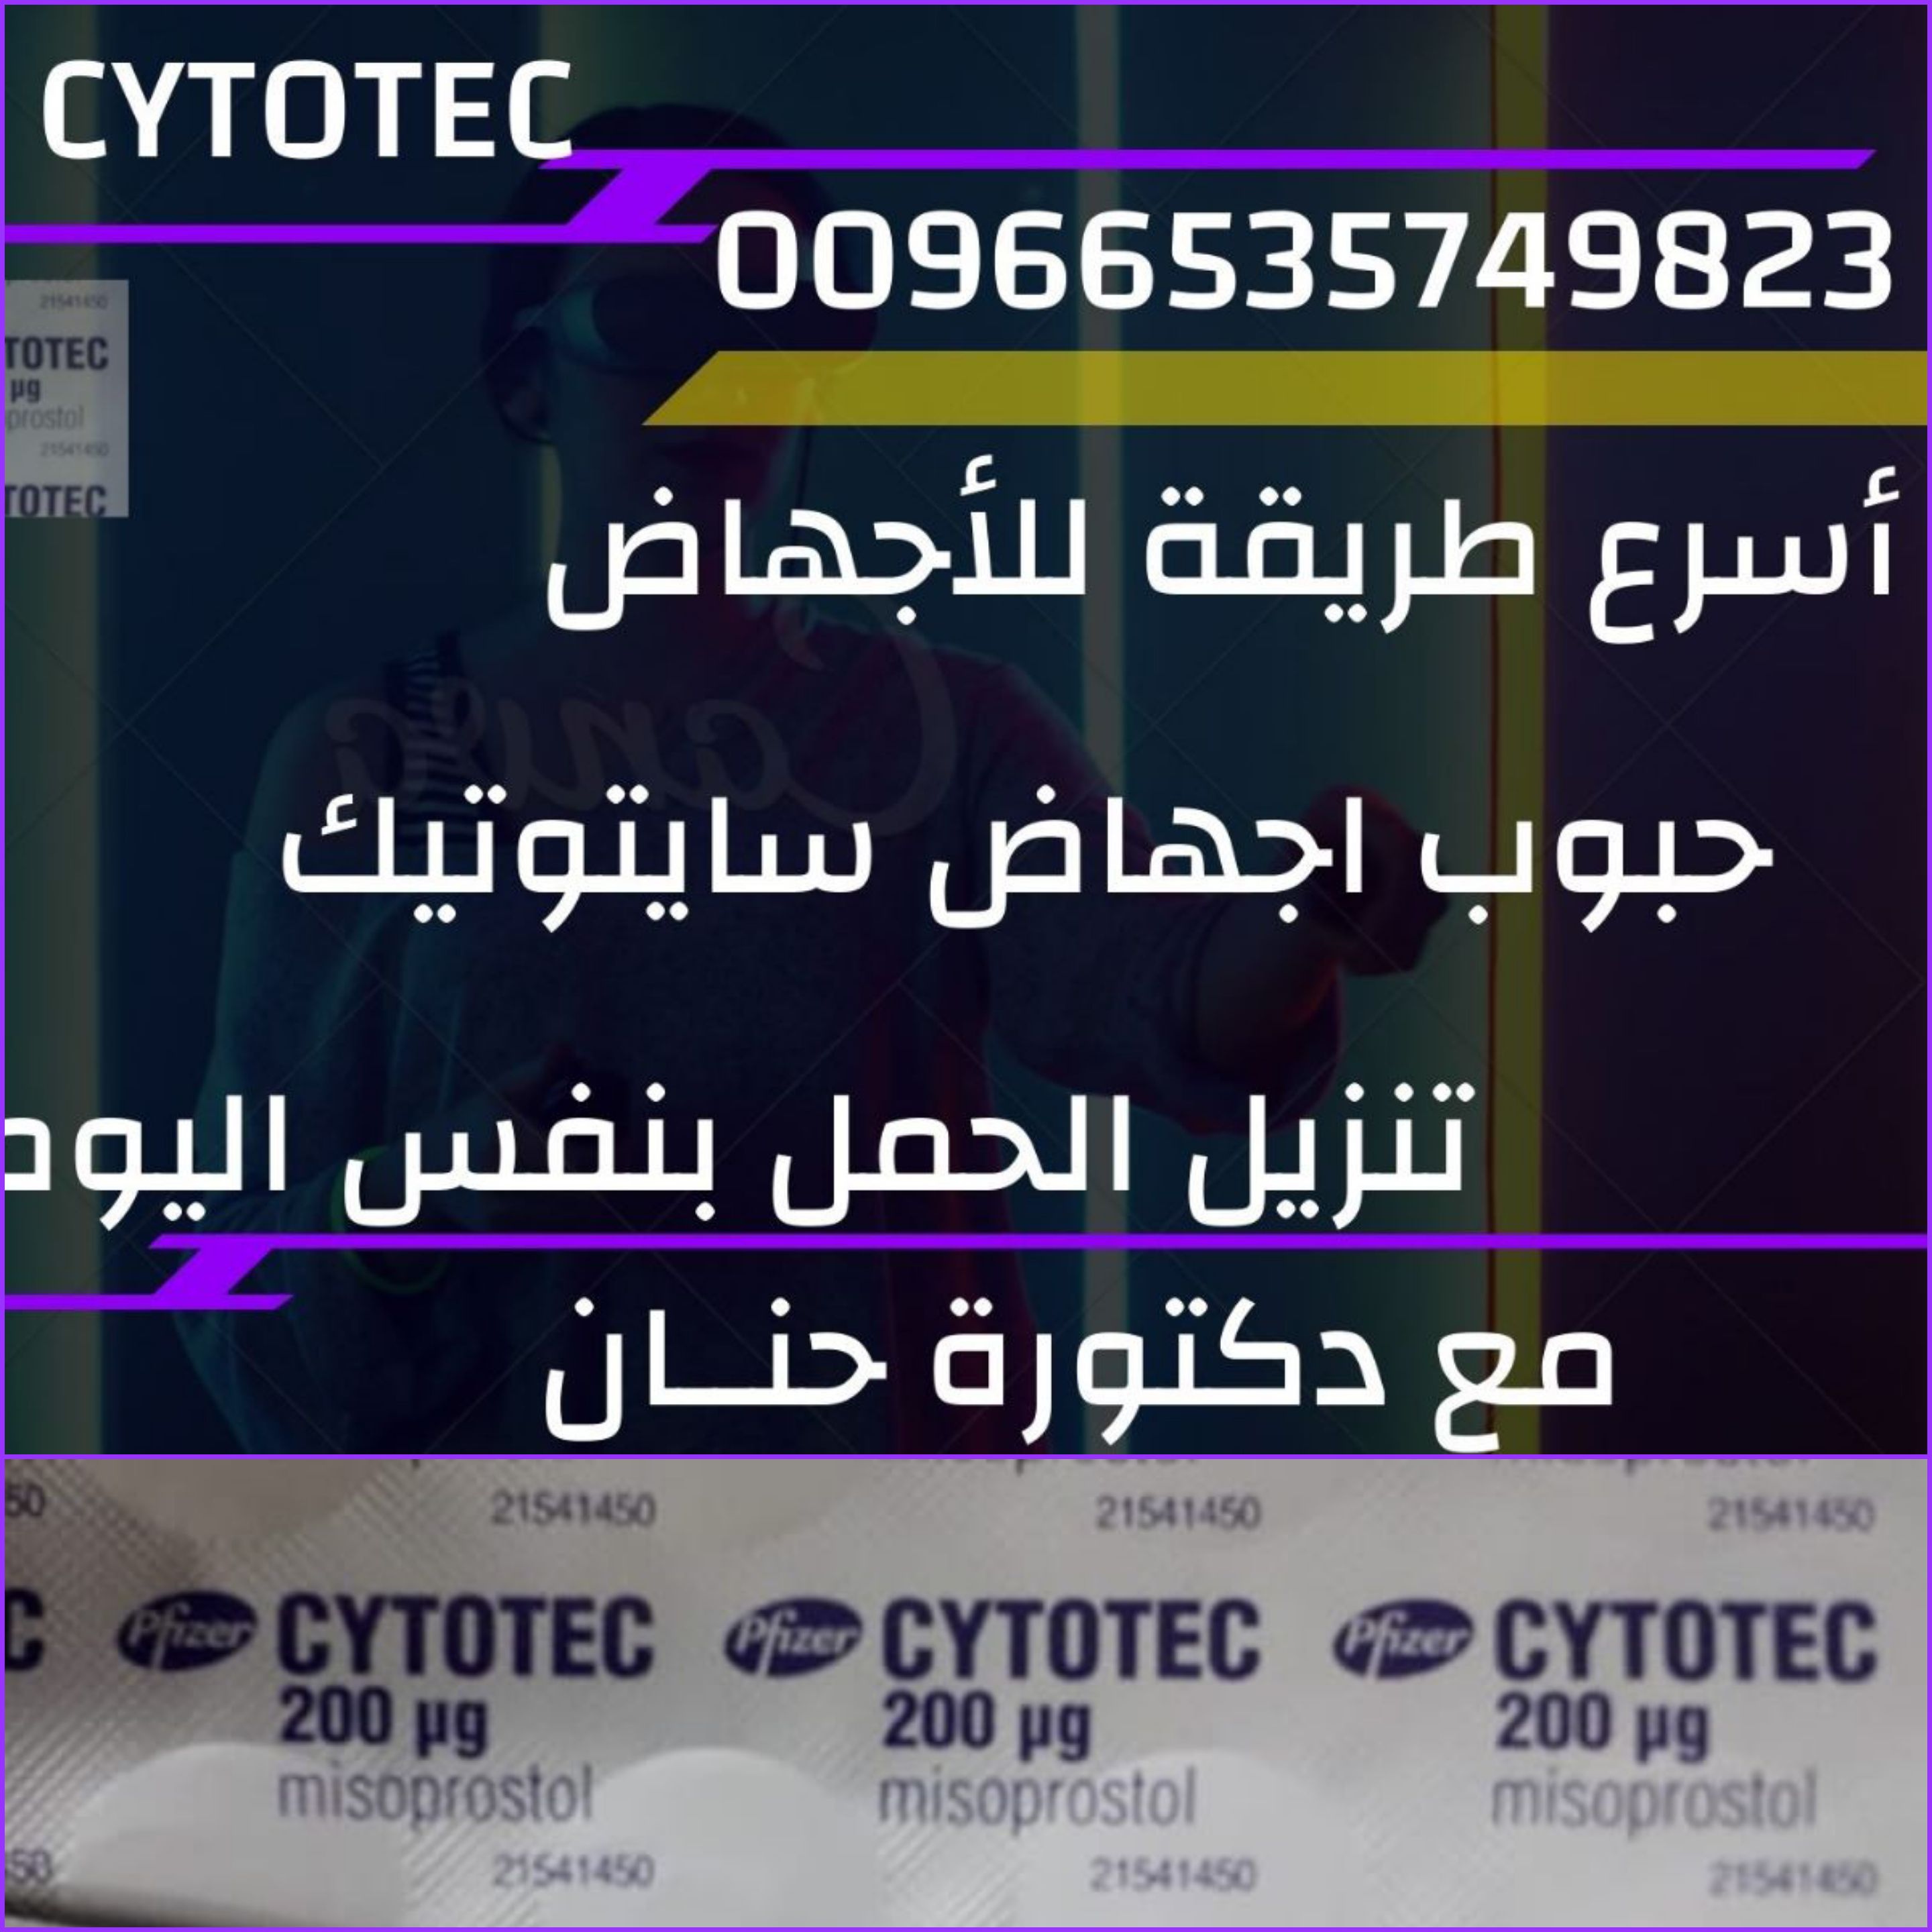 اكسسوارات-ومجوهراتحبوب سايتوتك في السعوديه - Cytotec pills in Saudi Arabia -...